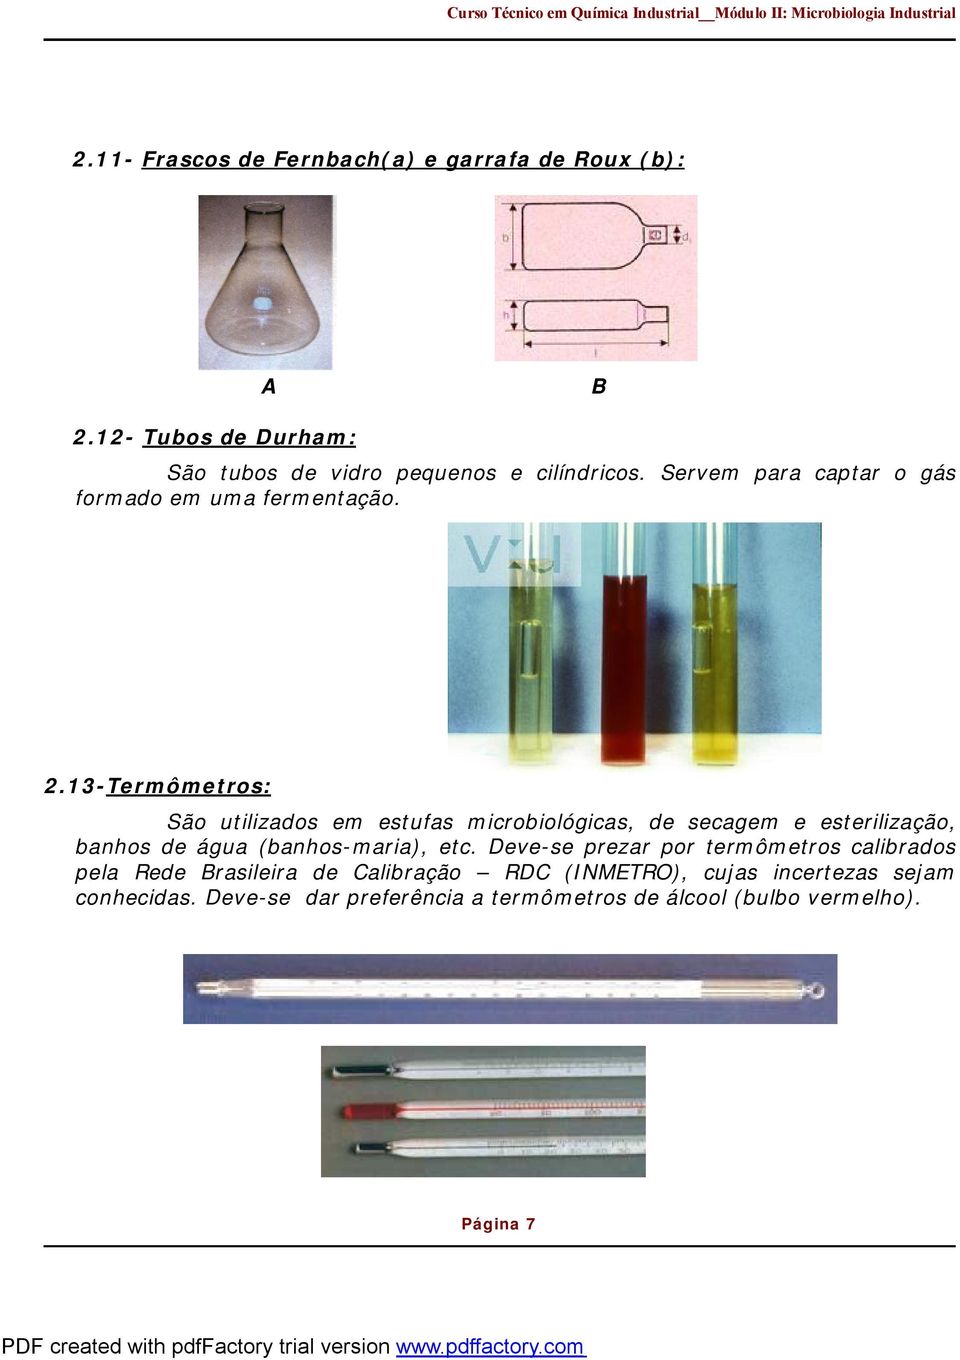 13-Termômetros: São utilizados em estufas microbiológicas, de secagem e esterilização, banhos de água (banhos-maria), etc.